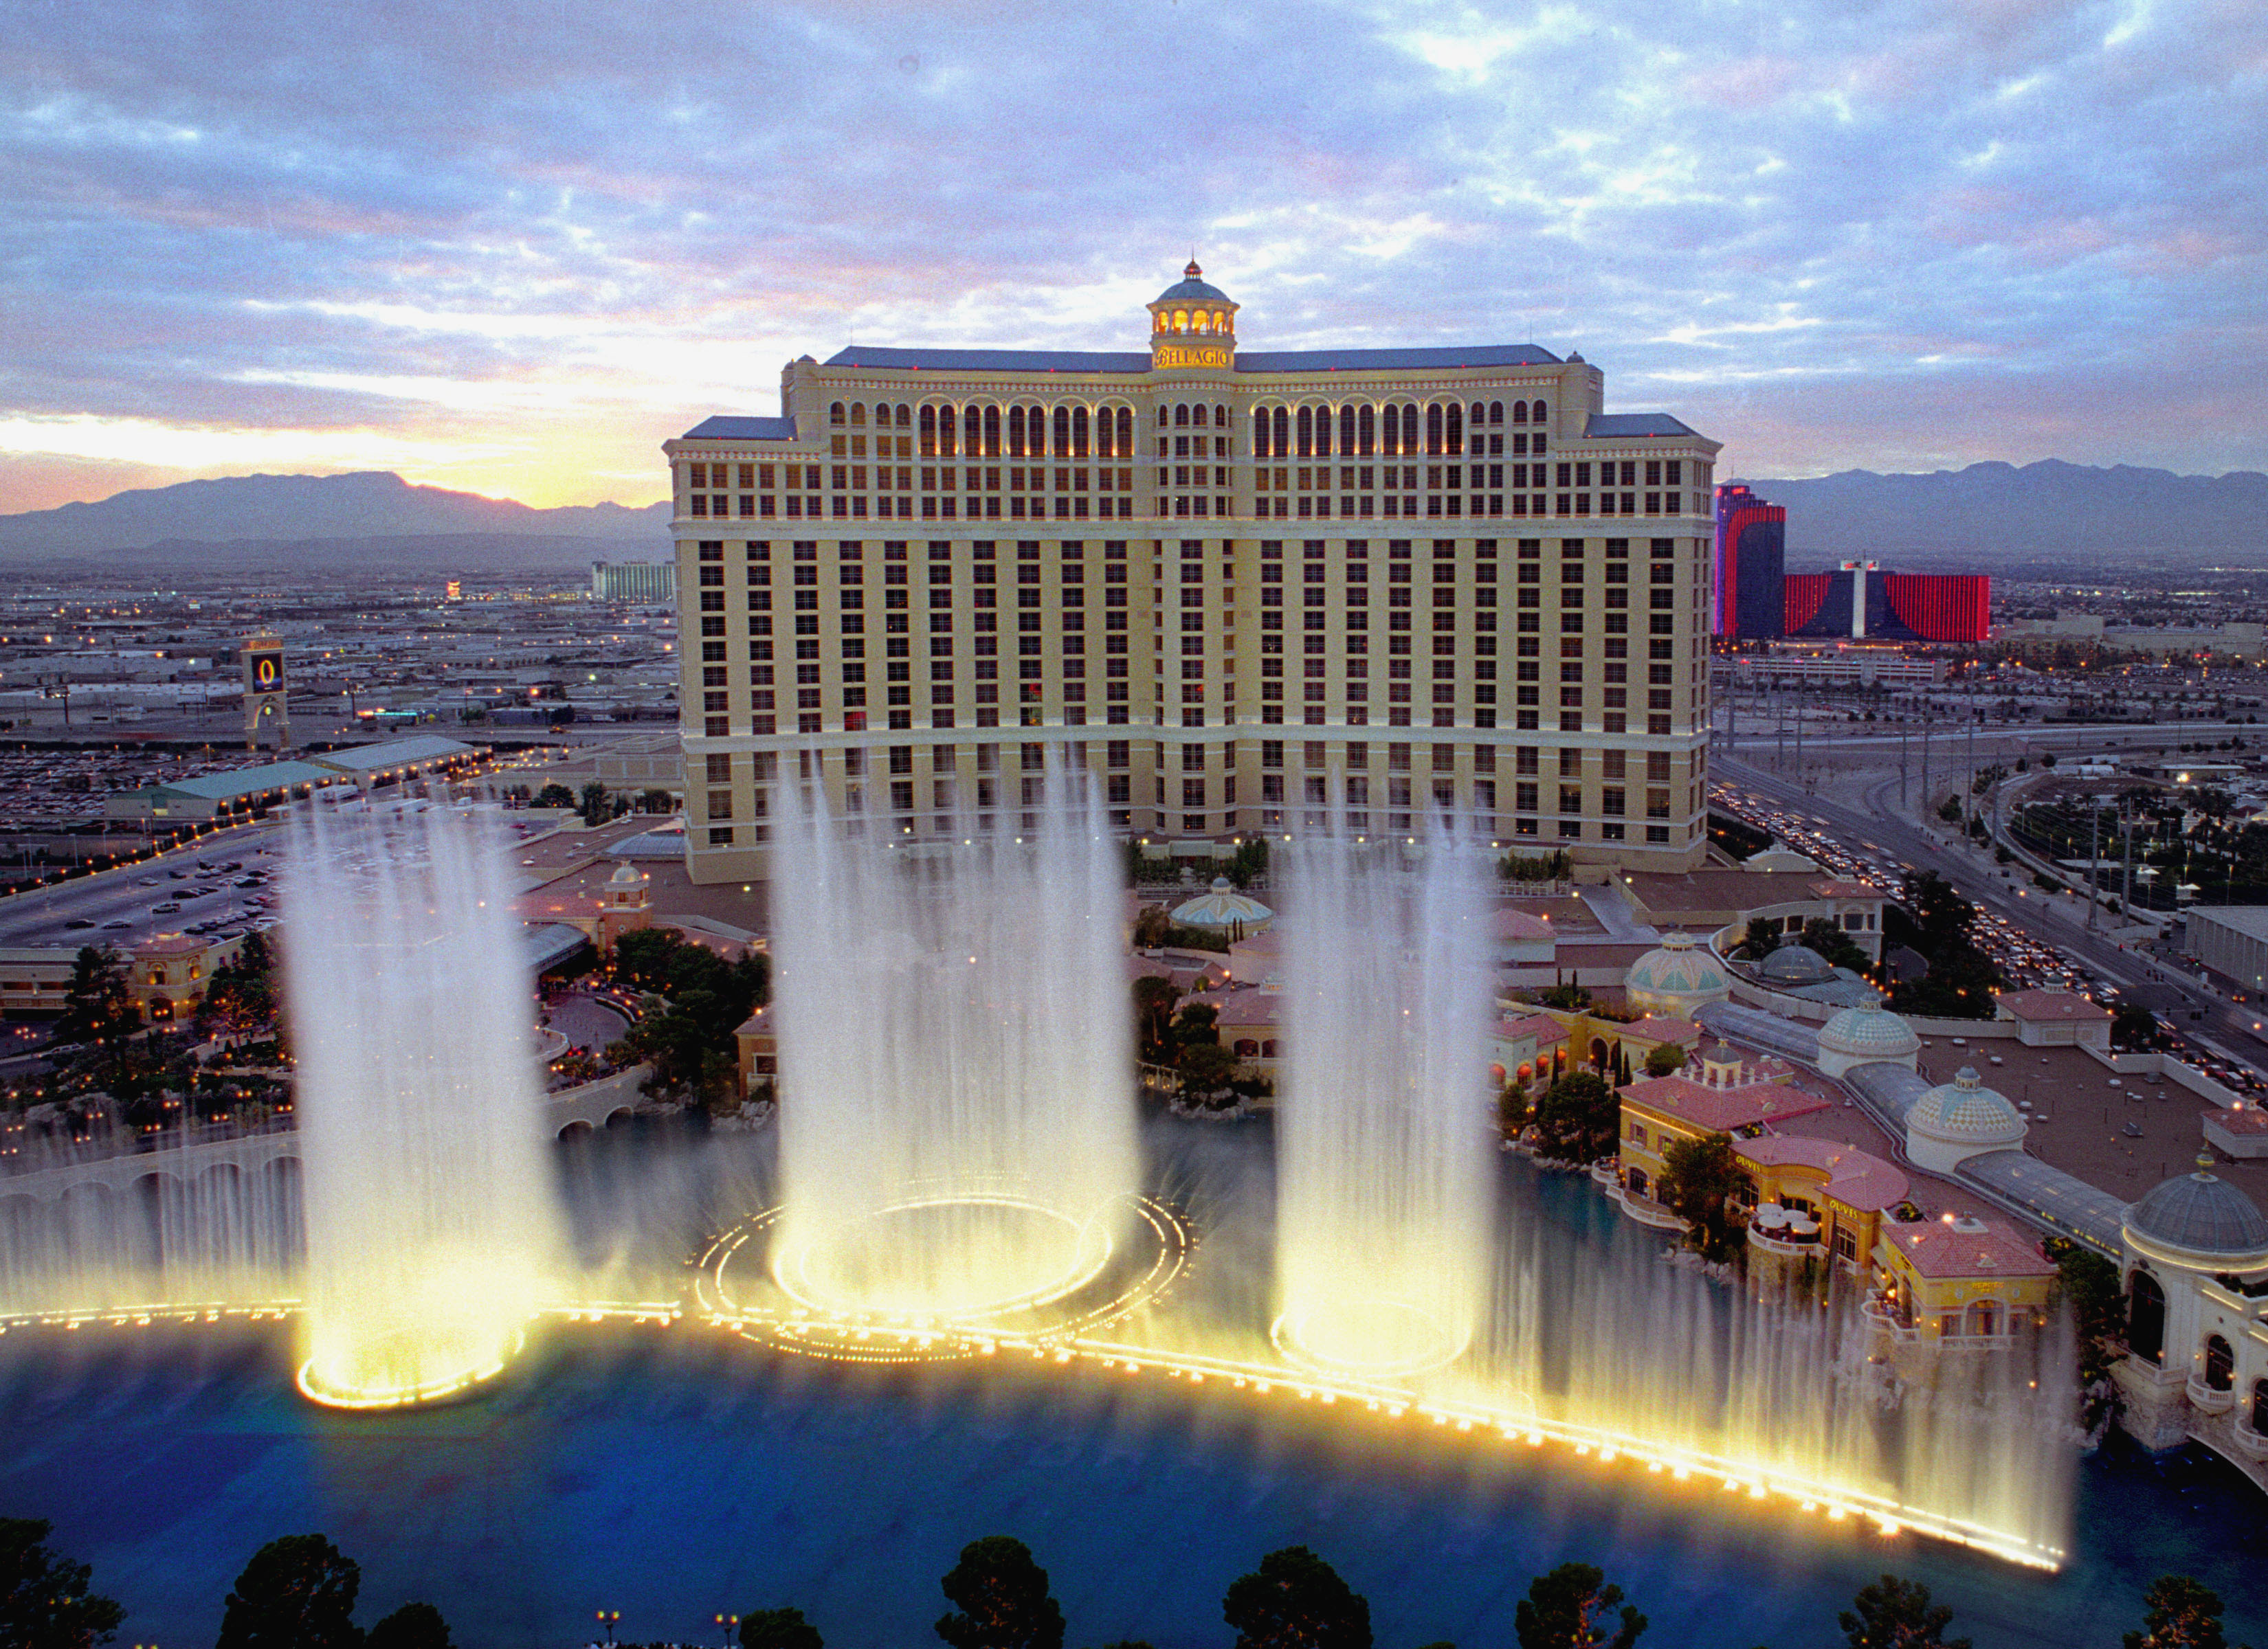 The Bellagio Las Vegas